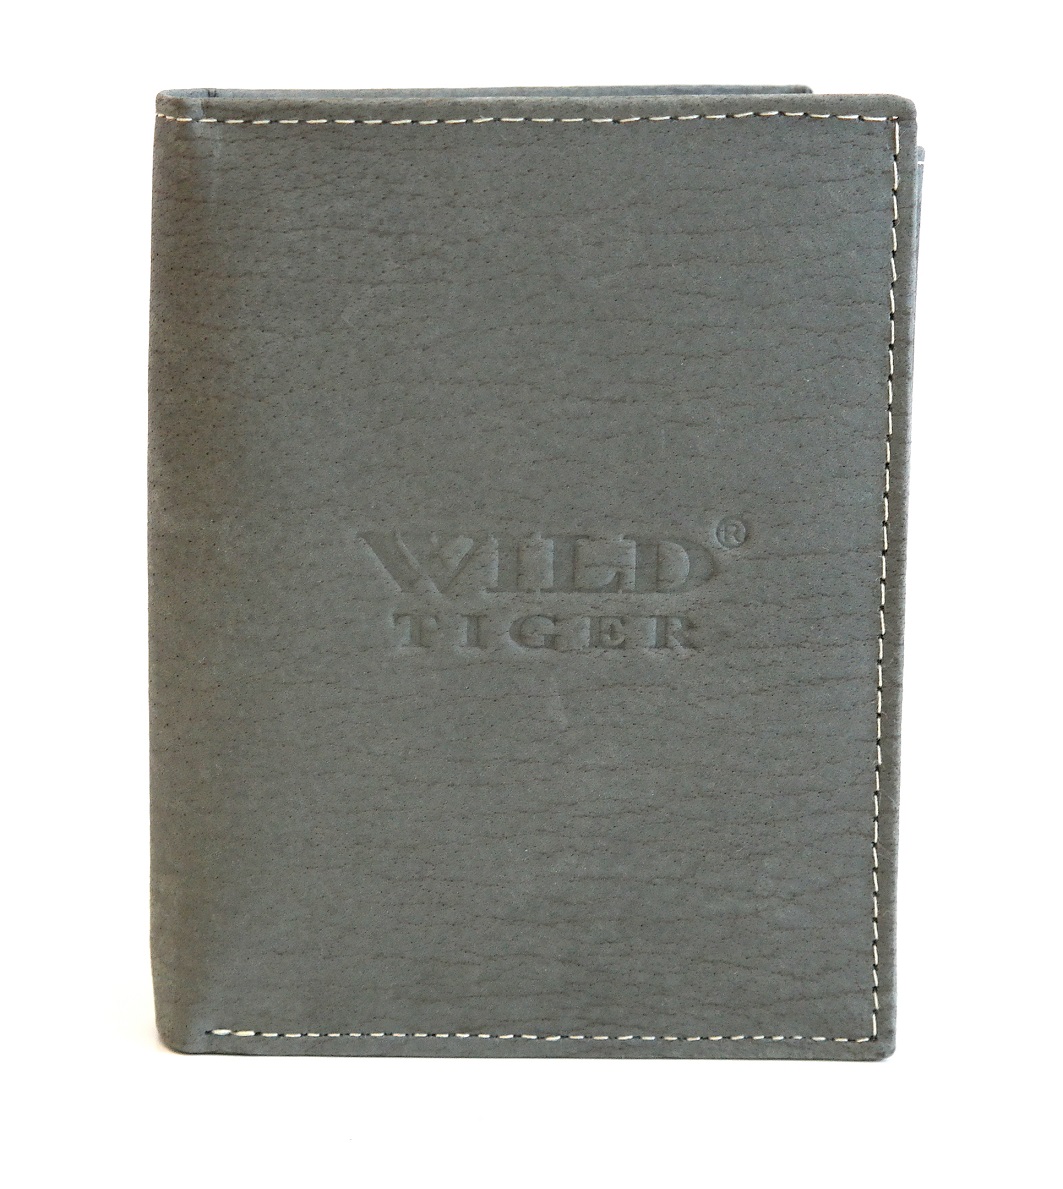 Kožená pánská peněženka Wild Tiger šedá